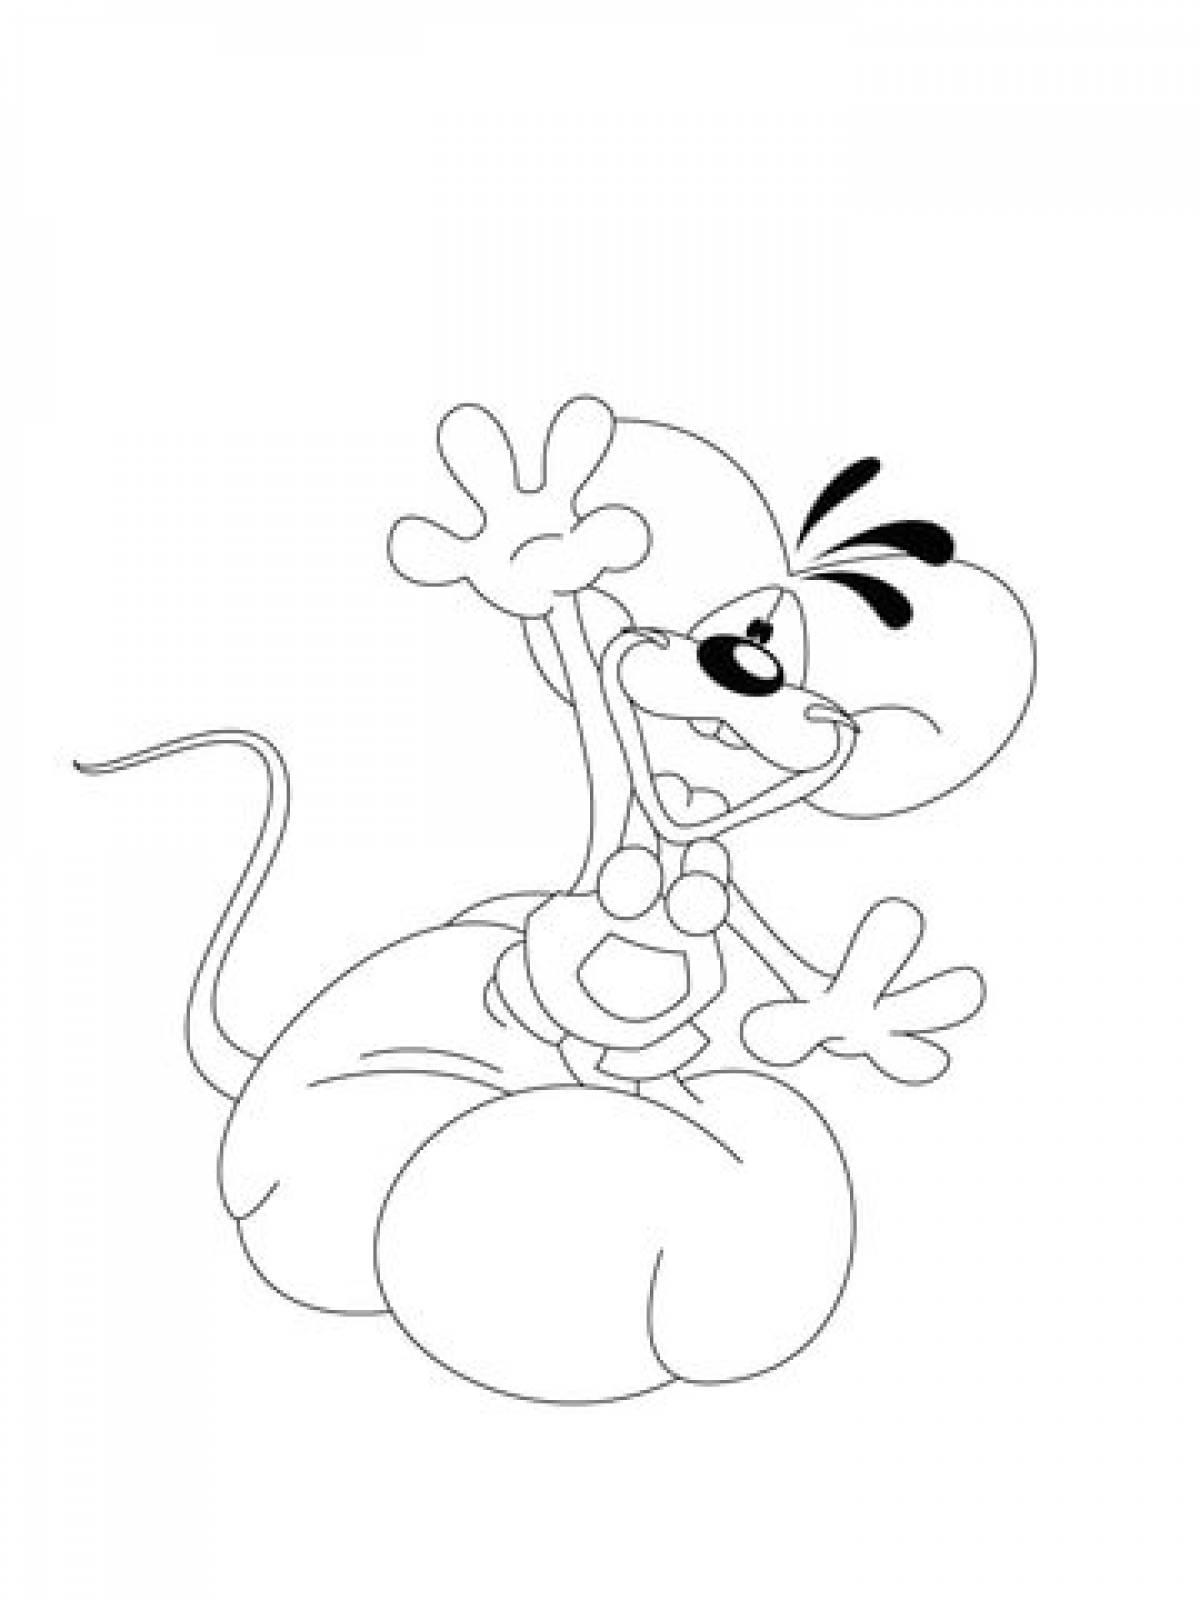 Happy little mouse